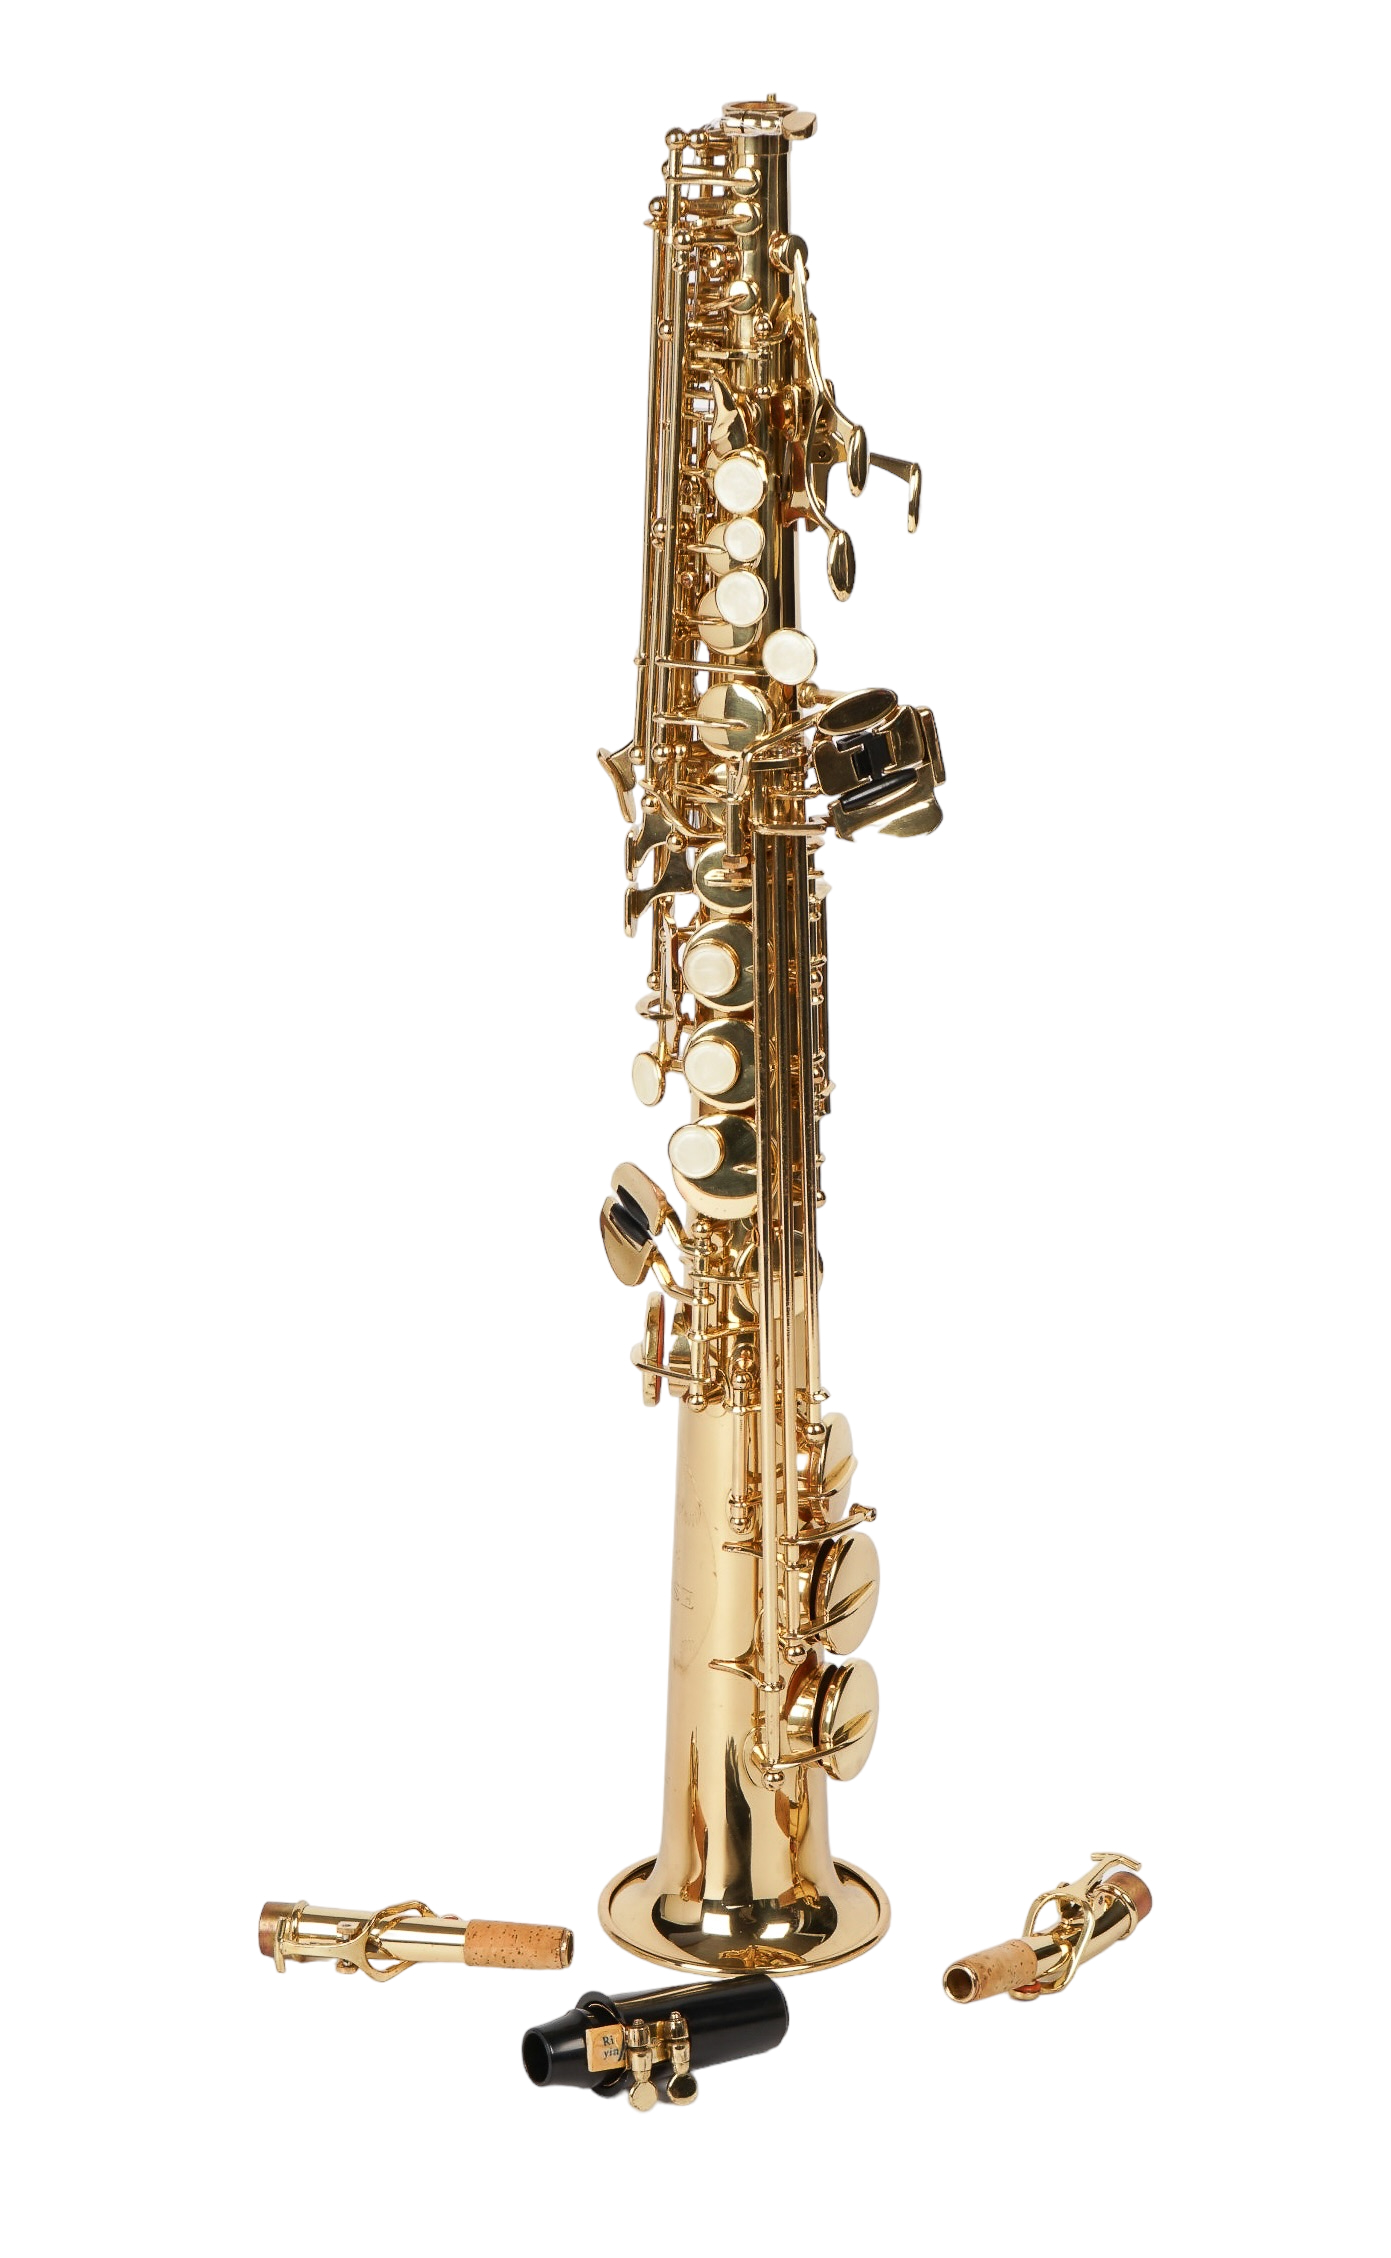 Sunrise soprano saxophone, with